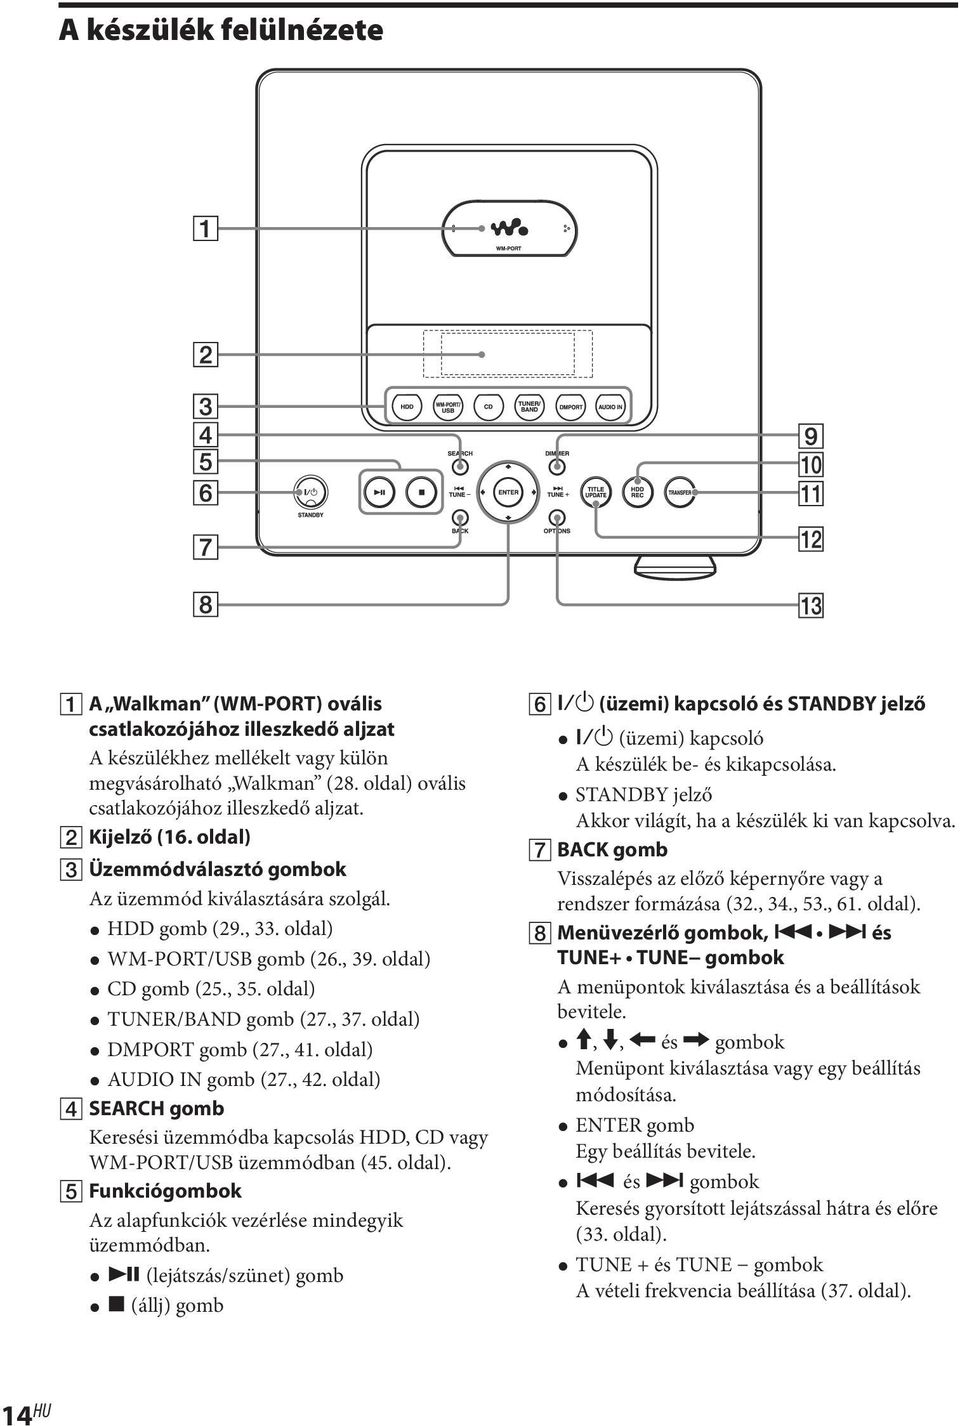 oldal) DMPORT gomb (27., 41. oldal) AUDIO IN gomb (27., 42. oldal) SEARCH gomb Keresési üzemmódba kapcsolás HDD, CD vagy WM-PORT/USB üzemmódban (45. oldal). Funkciógombok Az alapfunkciók vezérlése mindegyik üzemmódban.